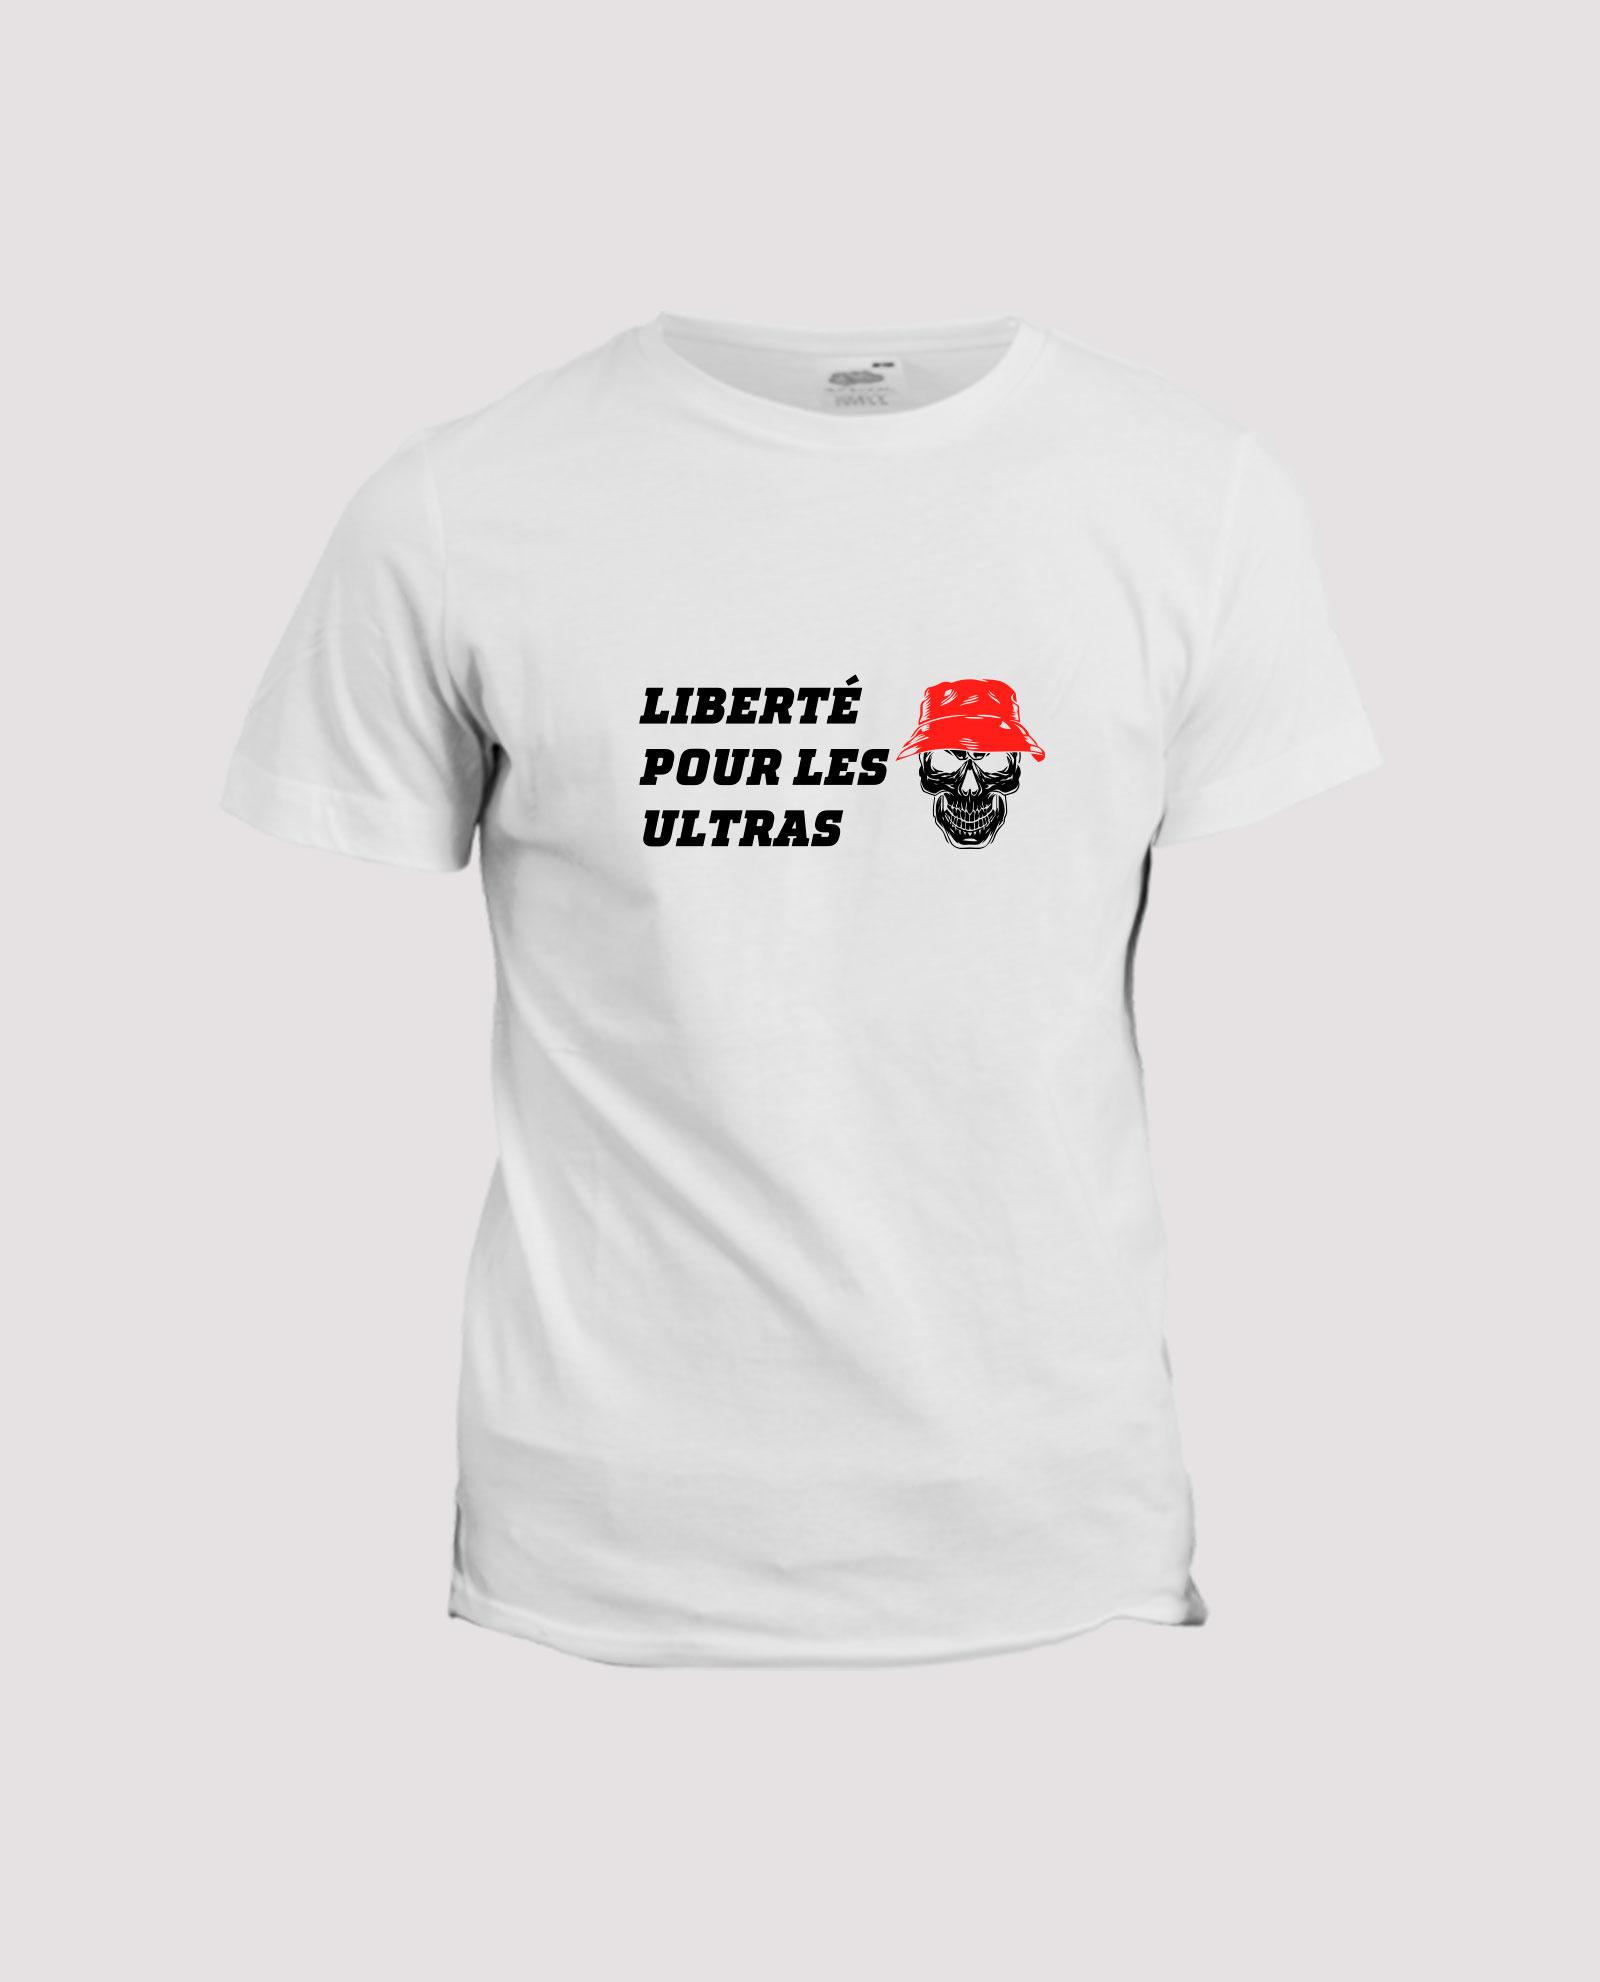 la-ligne-shop-t-shirt-teeshirt-blanc-liberte-pour-les-ultras-rouge